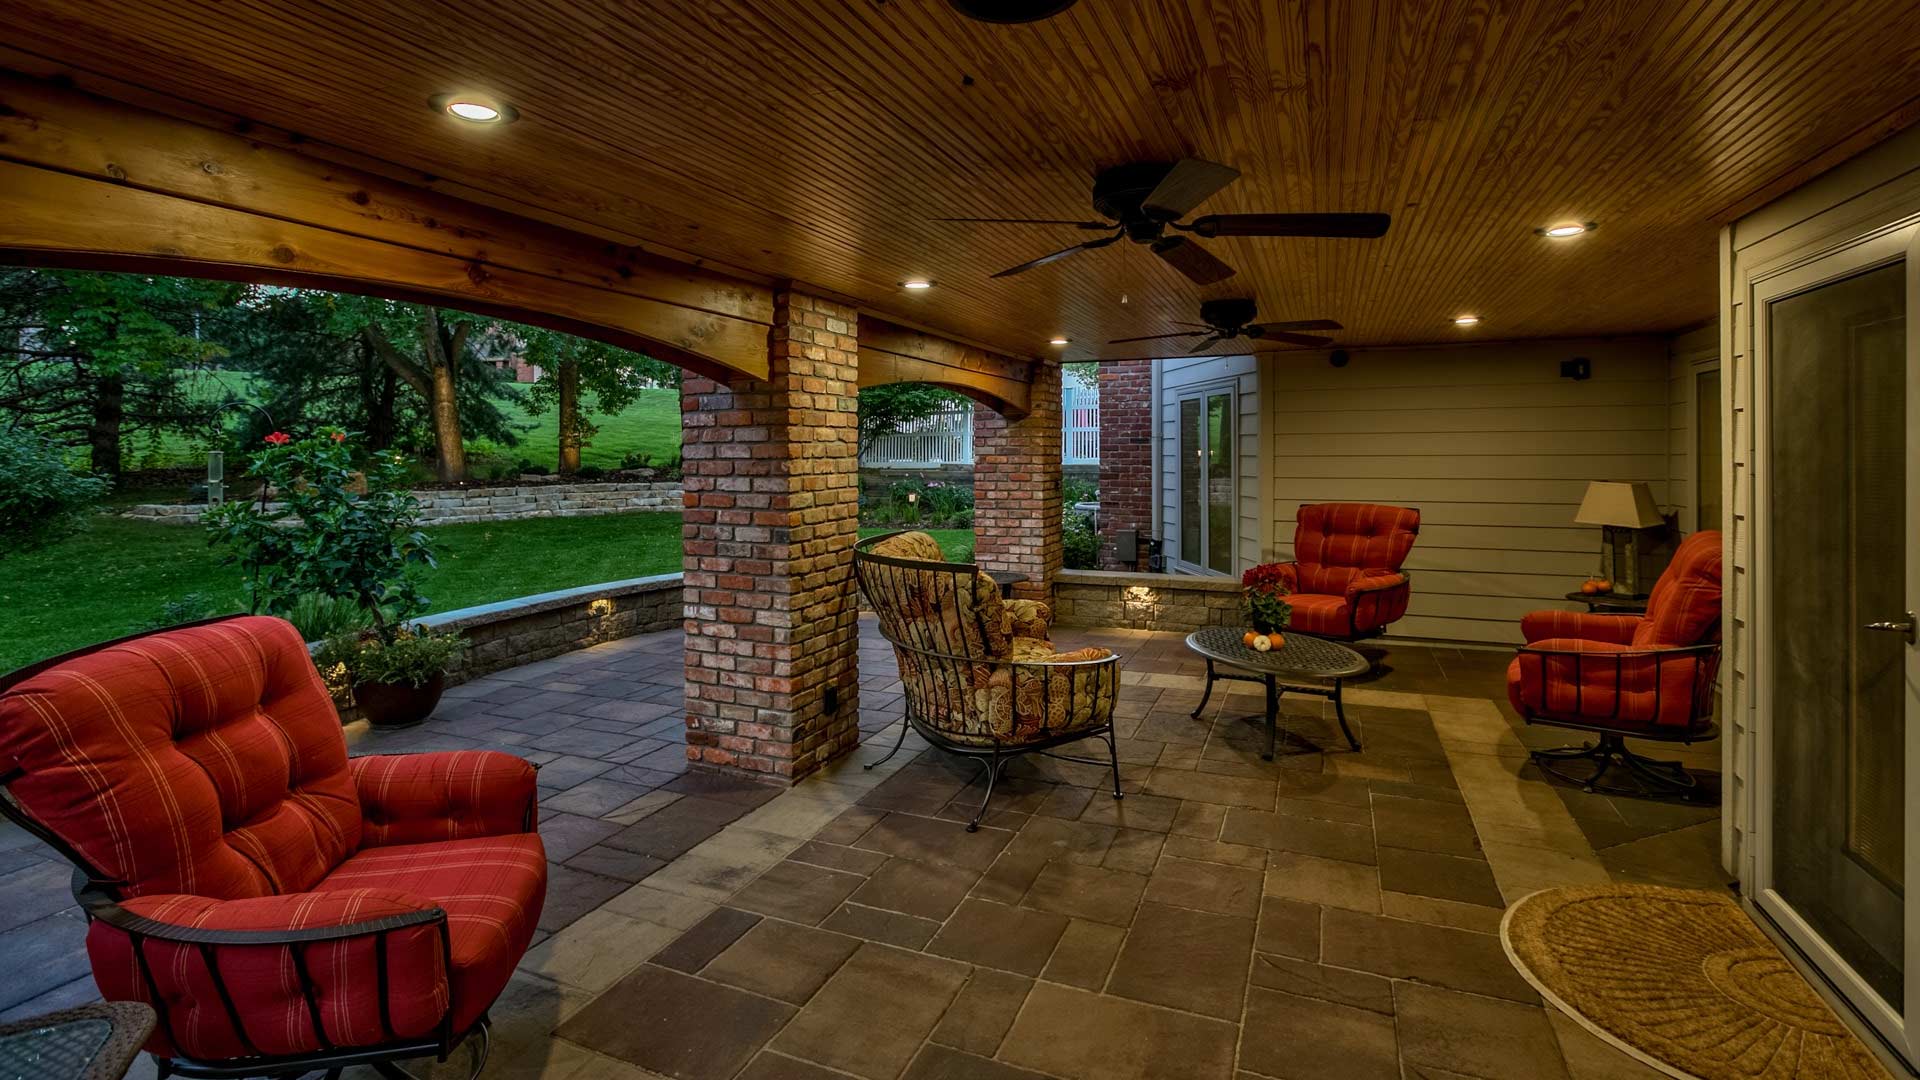 Beautiful outdoor living space with custom patio in Elkhorn, Nebraska.